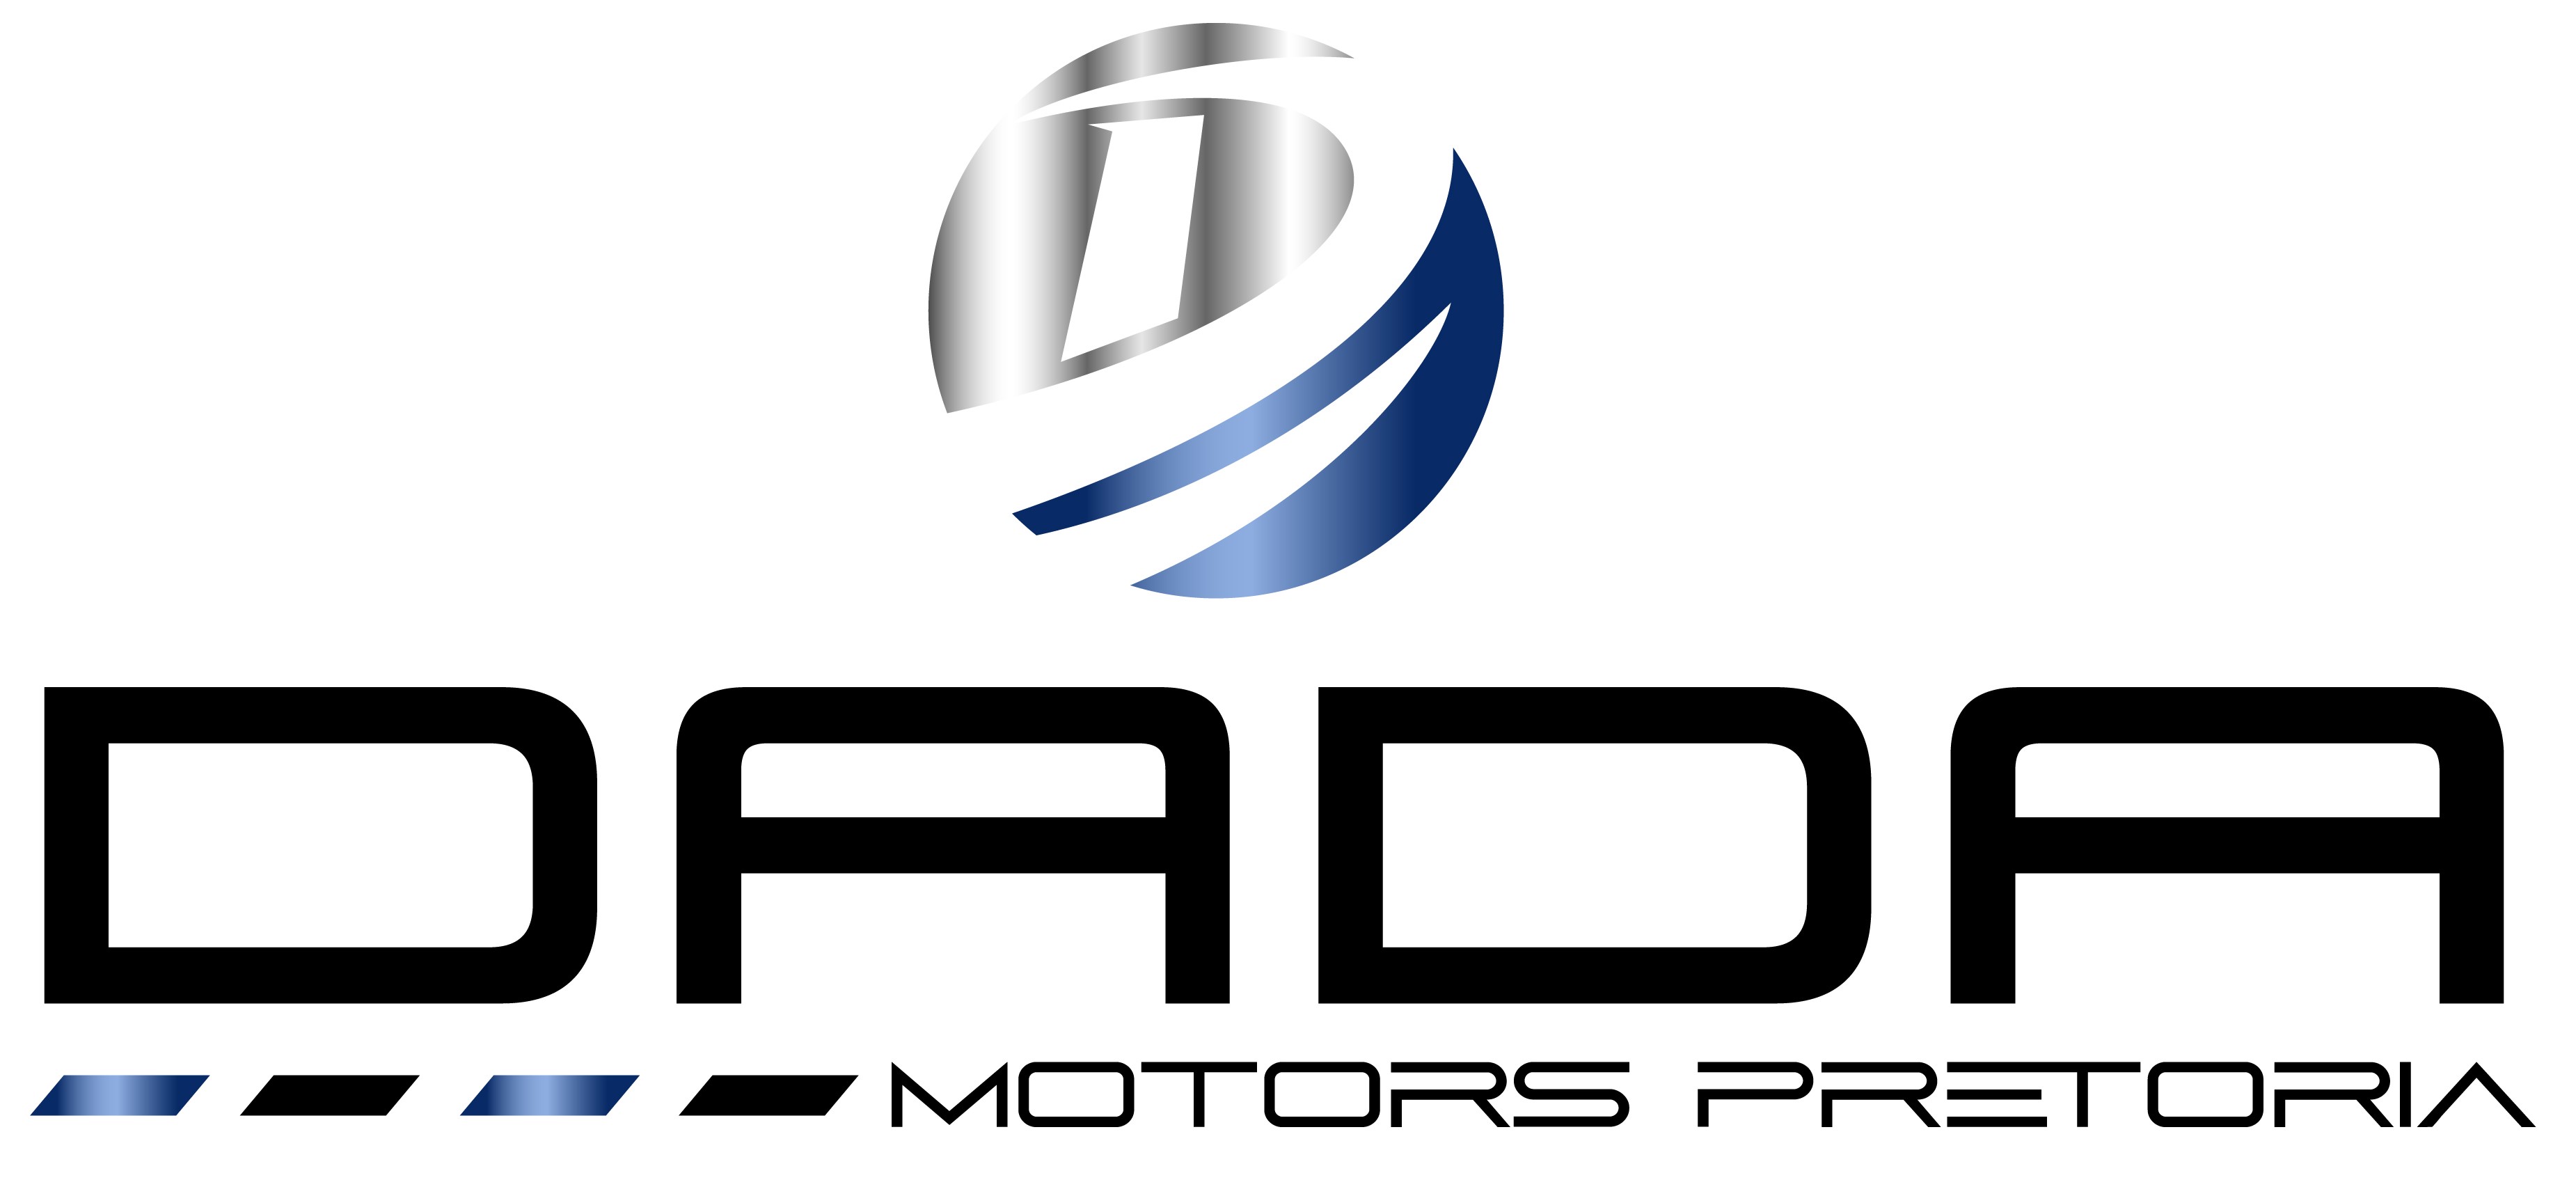 Dada Motors Pta